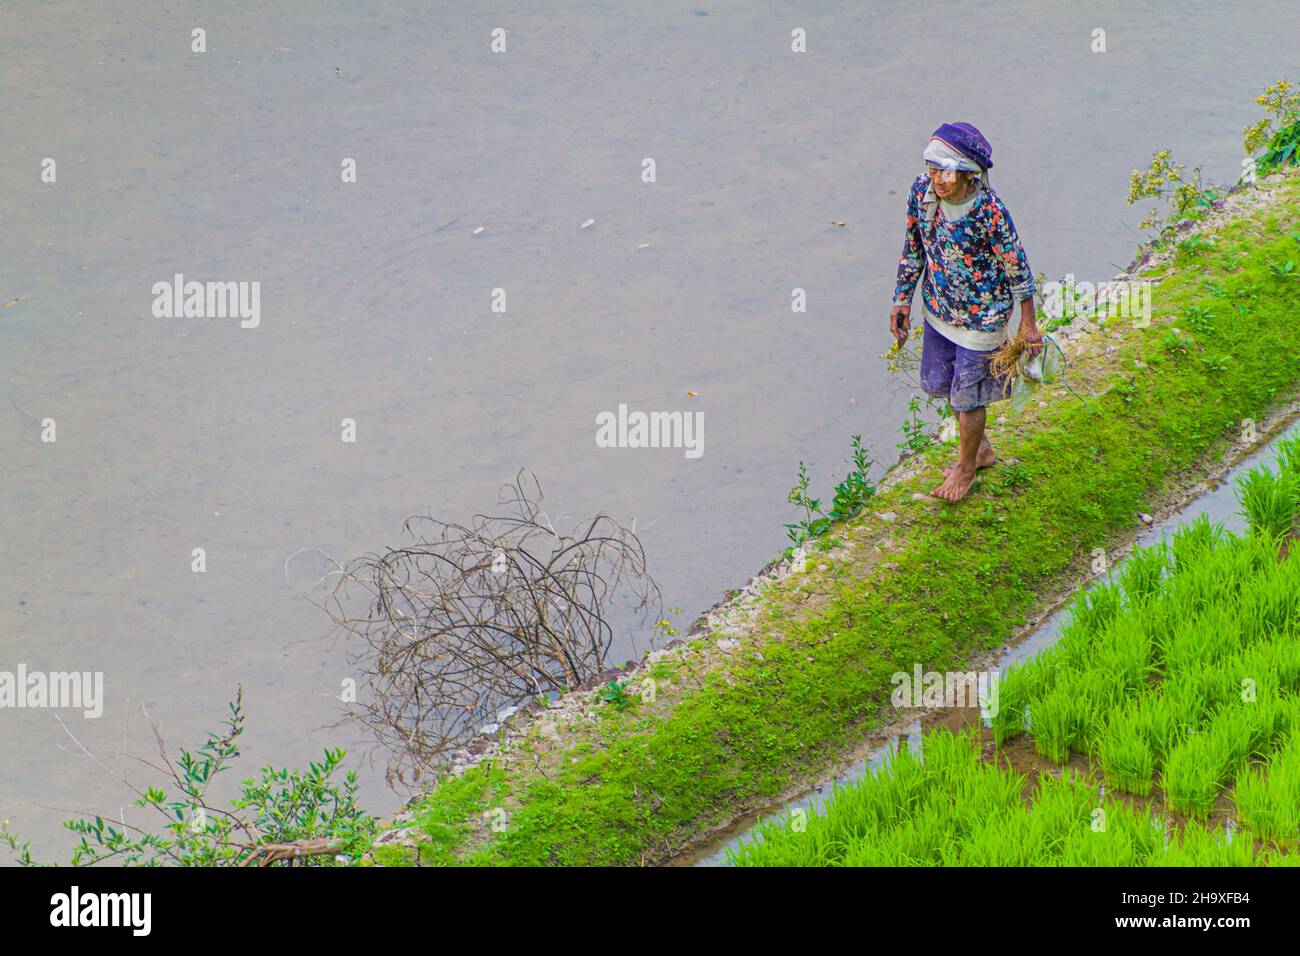 BATAD, PHILIPPINES - 22 JANVIER 2018 : une femme locale marche sur les terrasses de riz près du village de Batad, île de Luzon, Philippines Banque D'Images